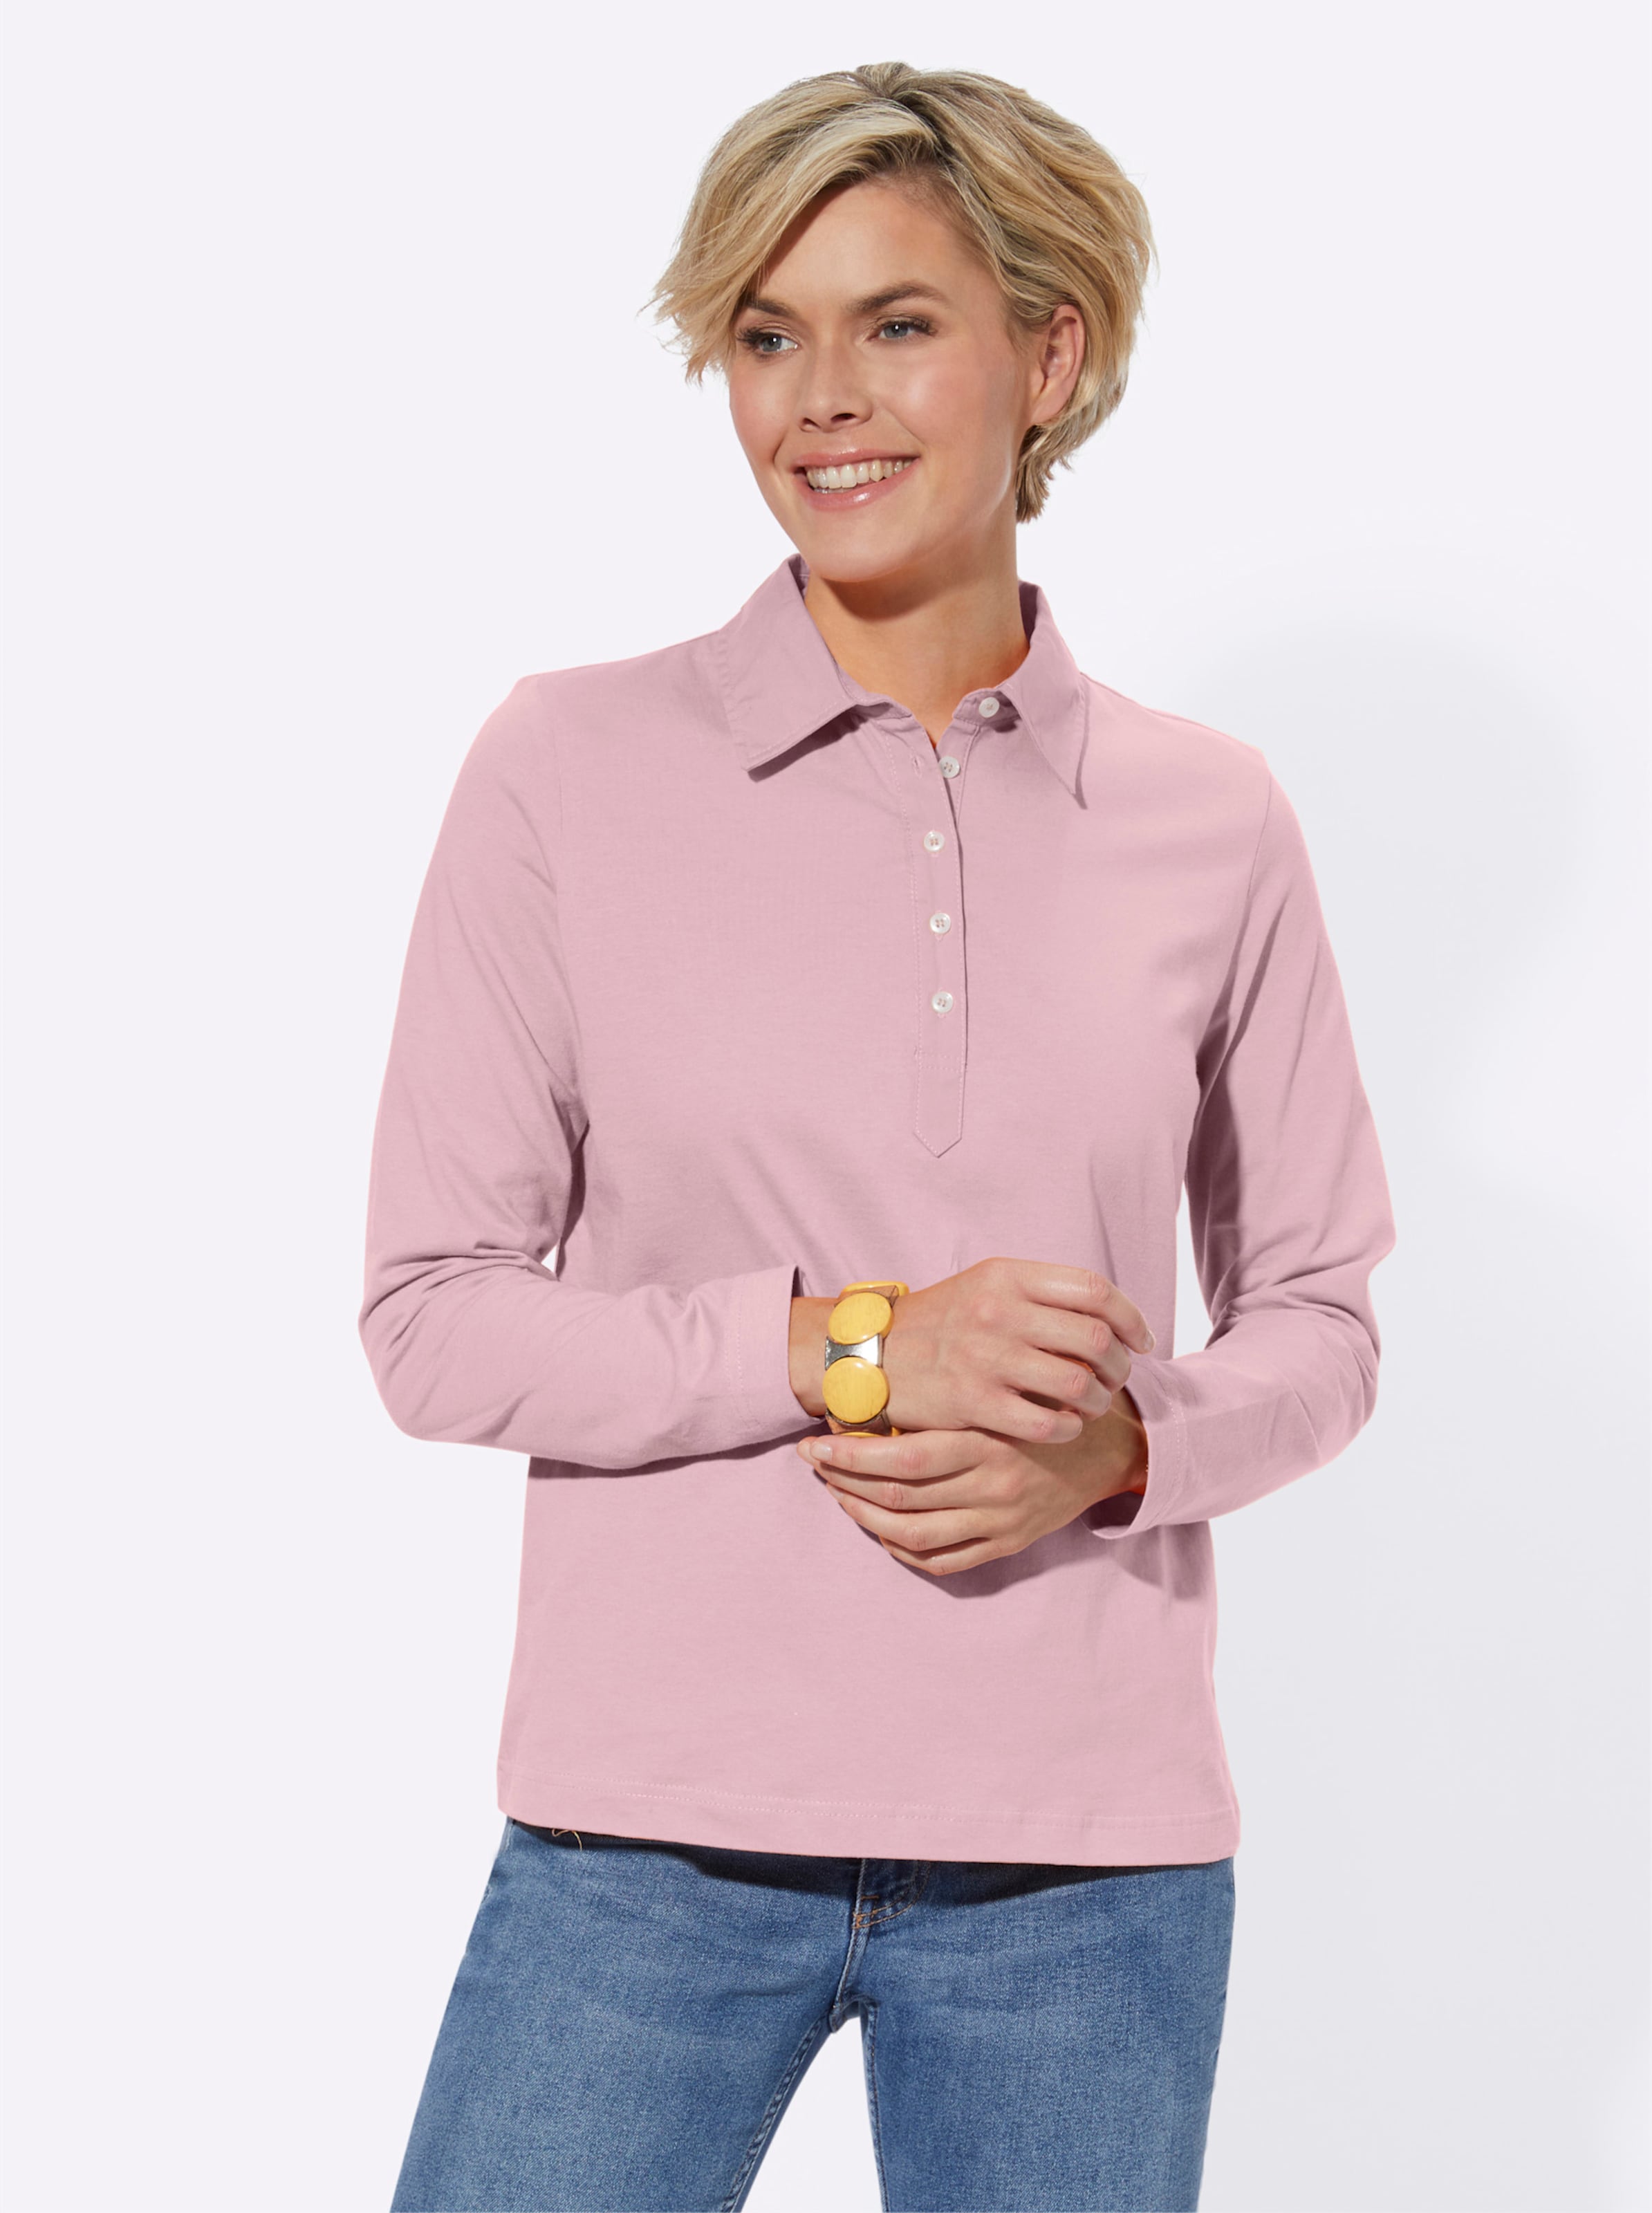 Dual/Single günstig Kaufen-Langarm-Poloshirt in rosé von heine. Langarm-Poloshirt in rosé von heine <![CDATA[Poloshirt in Single-Jersey-Qualität. Mit Polokragen und Knopfleiste. Langarm.]]>. 